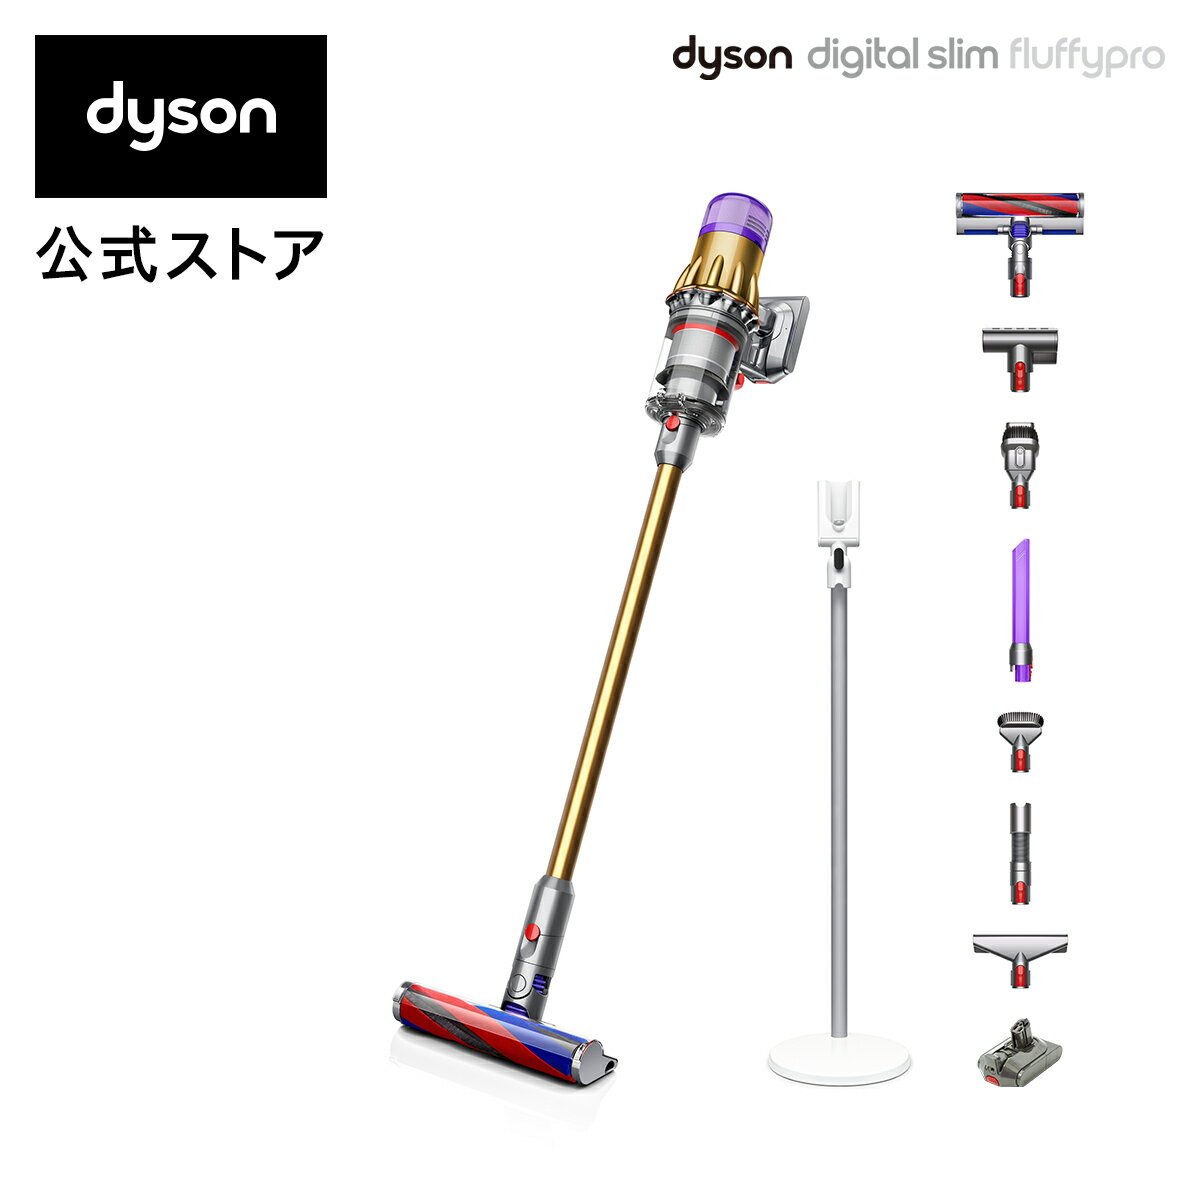 【軽量でパワフル】ダイソン Dyson Digital Slim Fluffy Pro サイクロン式 コードレス掃除機 dyson SV18FFPRO 2020年モデル